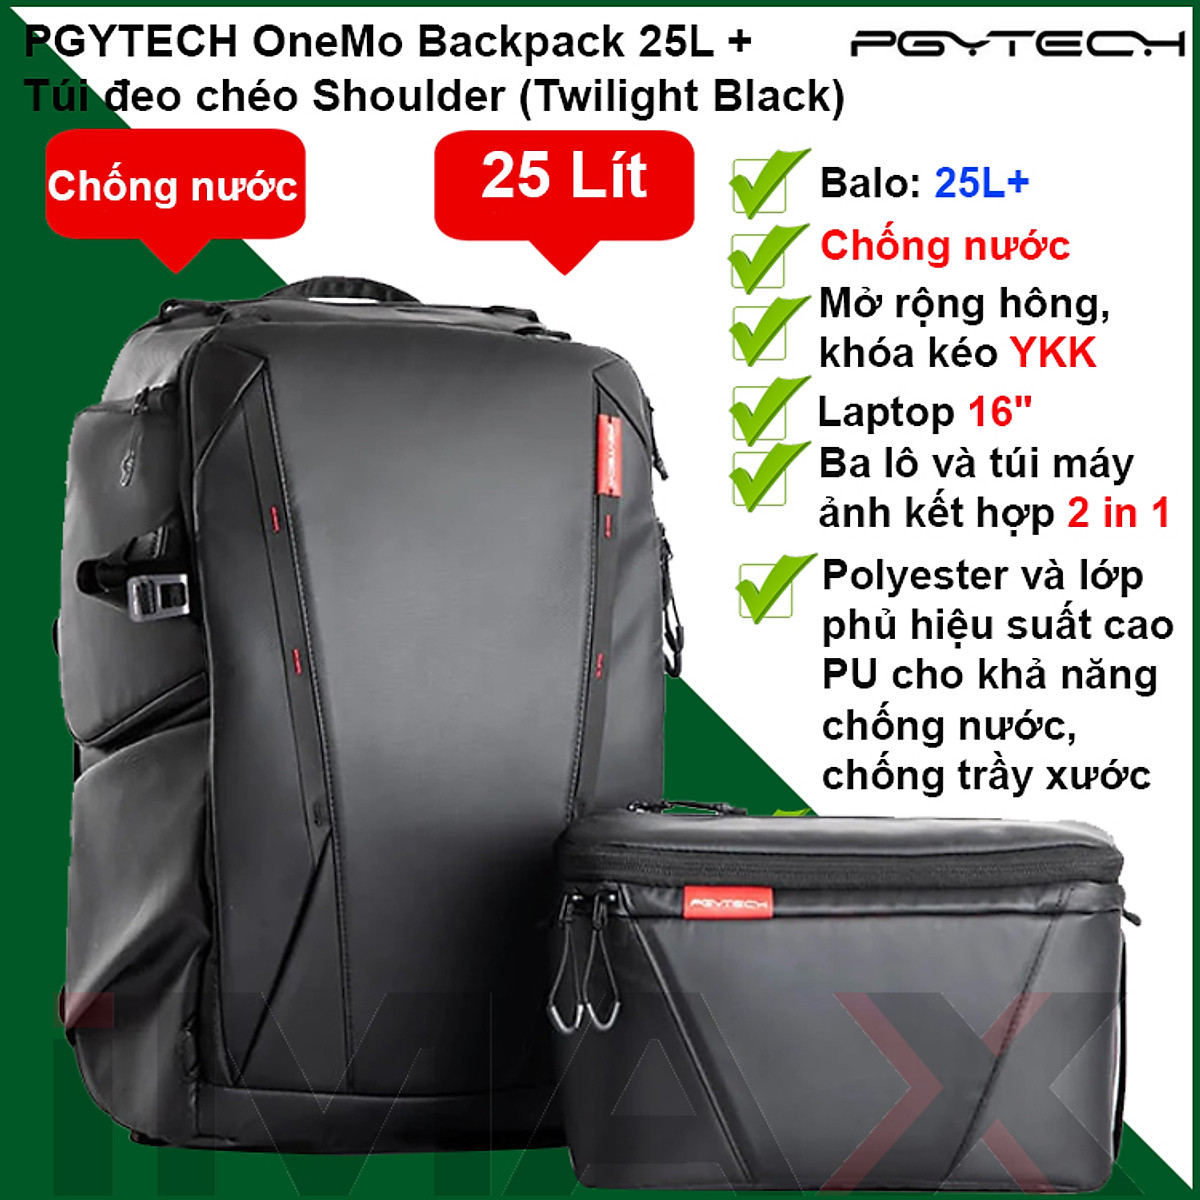 Balo máy ảnh PGYTECH OneMo Backpack - Bạn đam mê chụp ảnh và muốn có một chiếc balo tiện dụng để mang theo máy ảnh và các phụ kiện đi du lịch? Bạn sẽ yêu thích balo máy ảnh PGYTECH OneMo Backpack với thiết kế thông minh và chất lượng tuyệt vời. Hãy xem hình ảnh để cảm nhận.